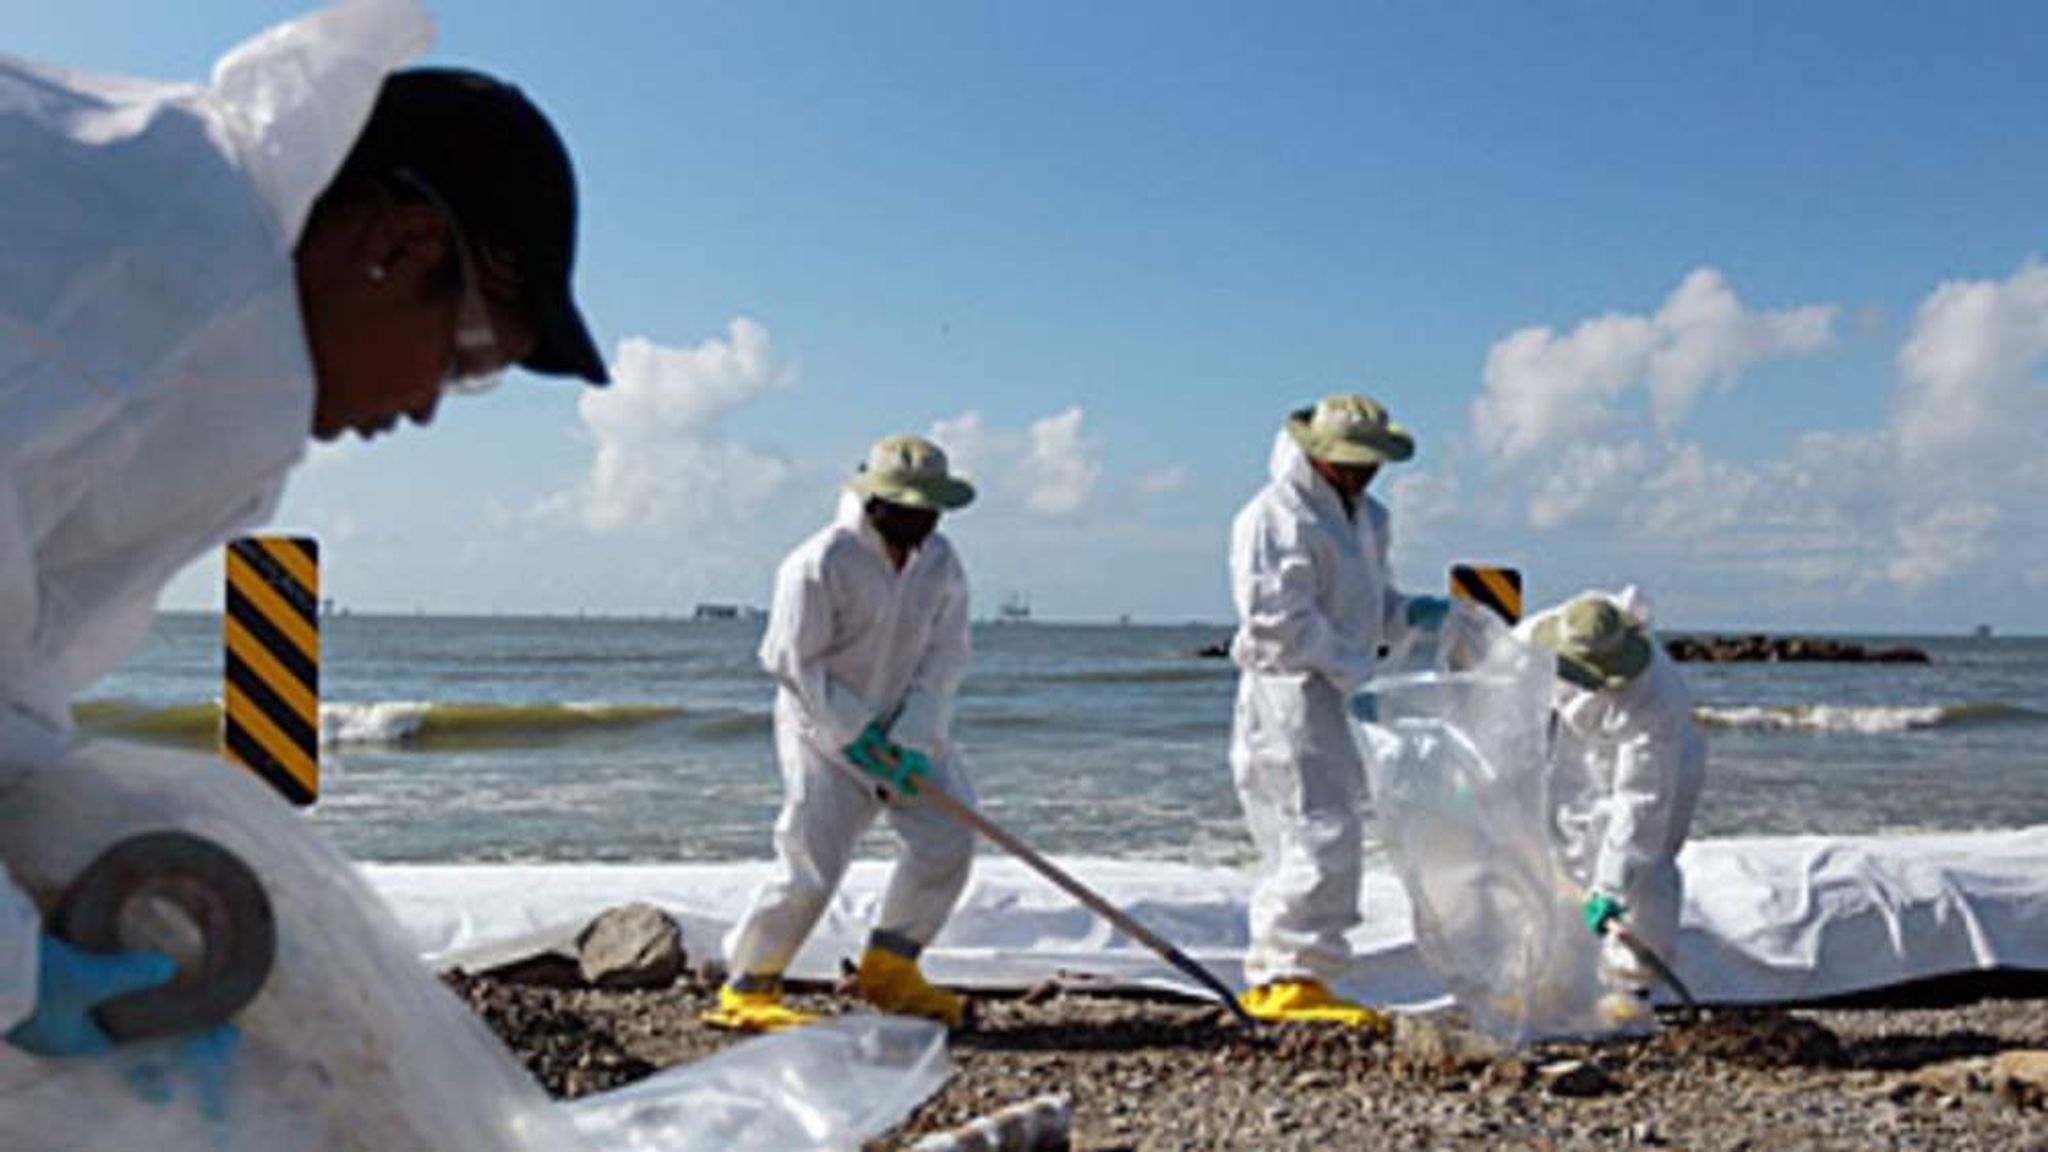 Bp oil spill jobs in louisiana